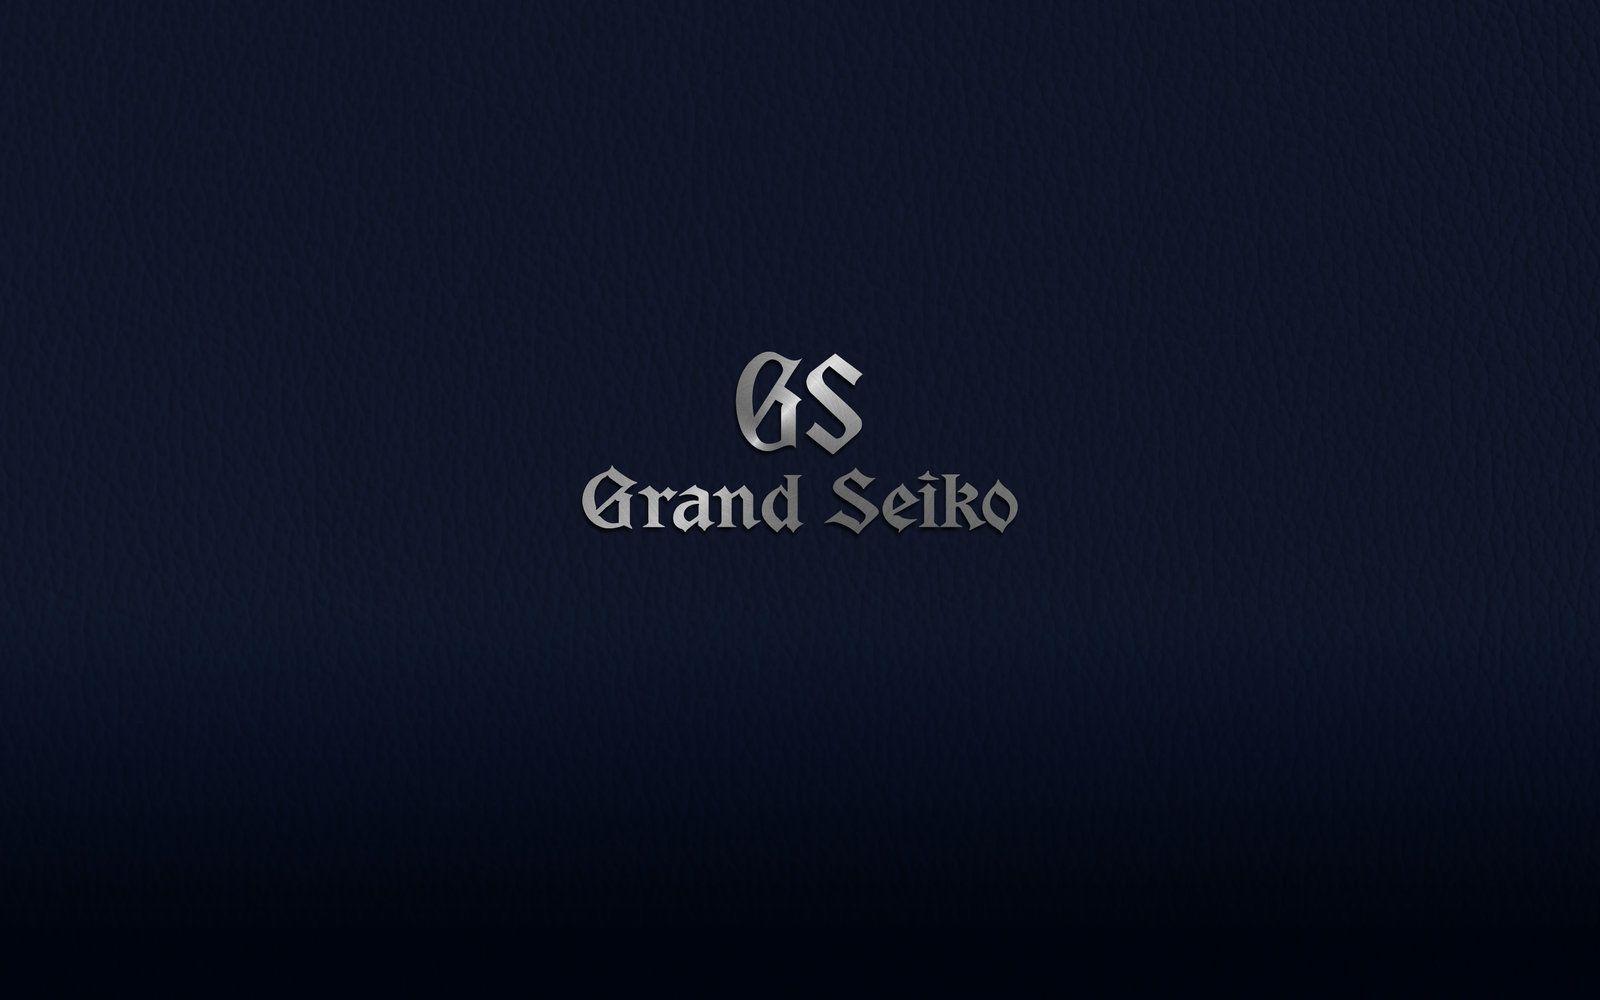 Grand Seiko Wallpaper | WatchUSeek Watch Forums